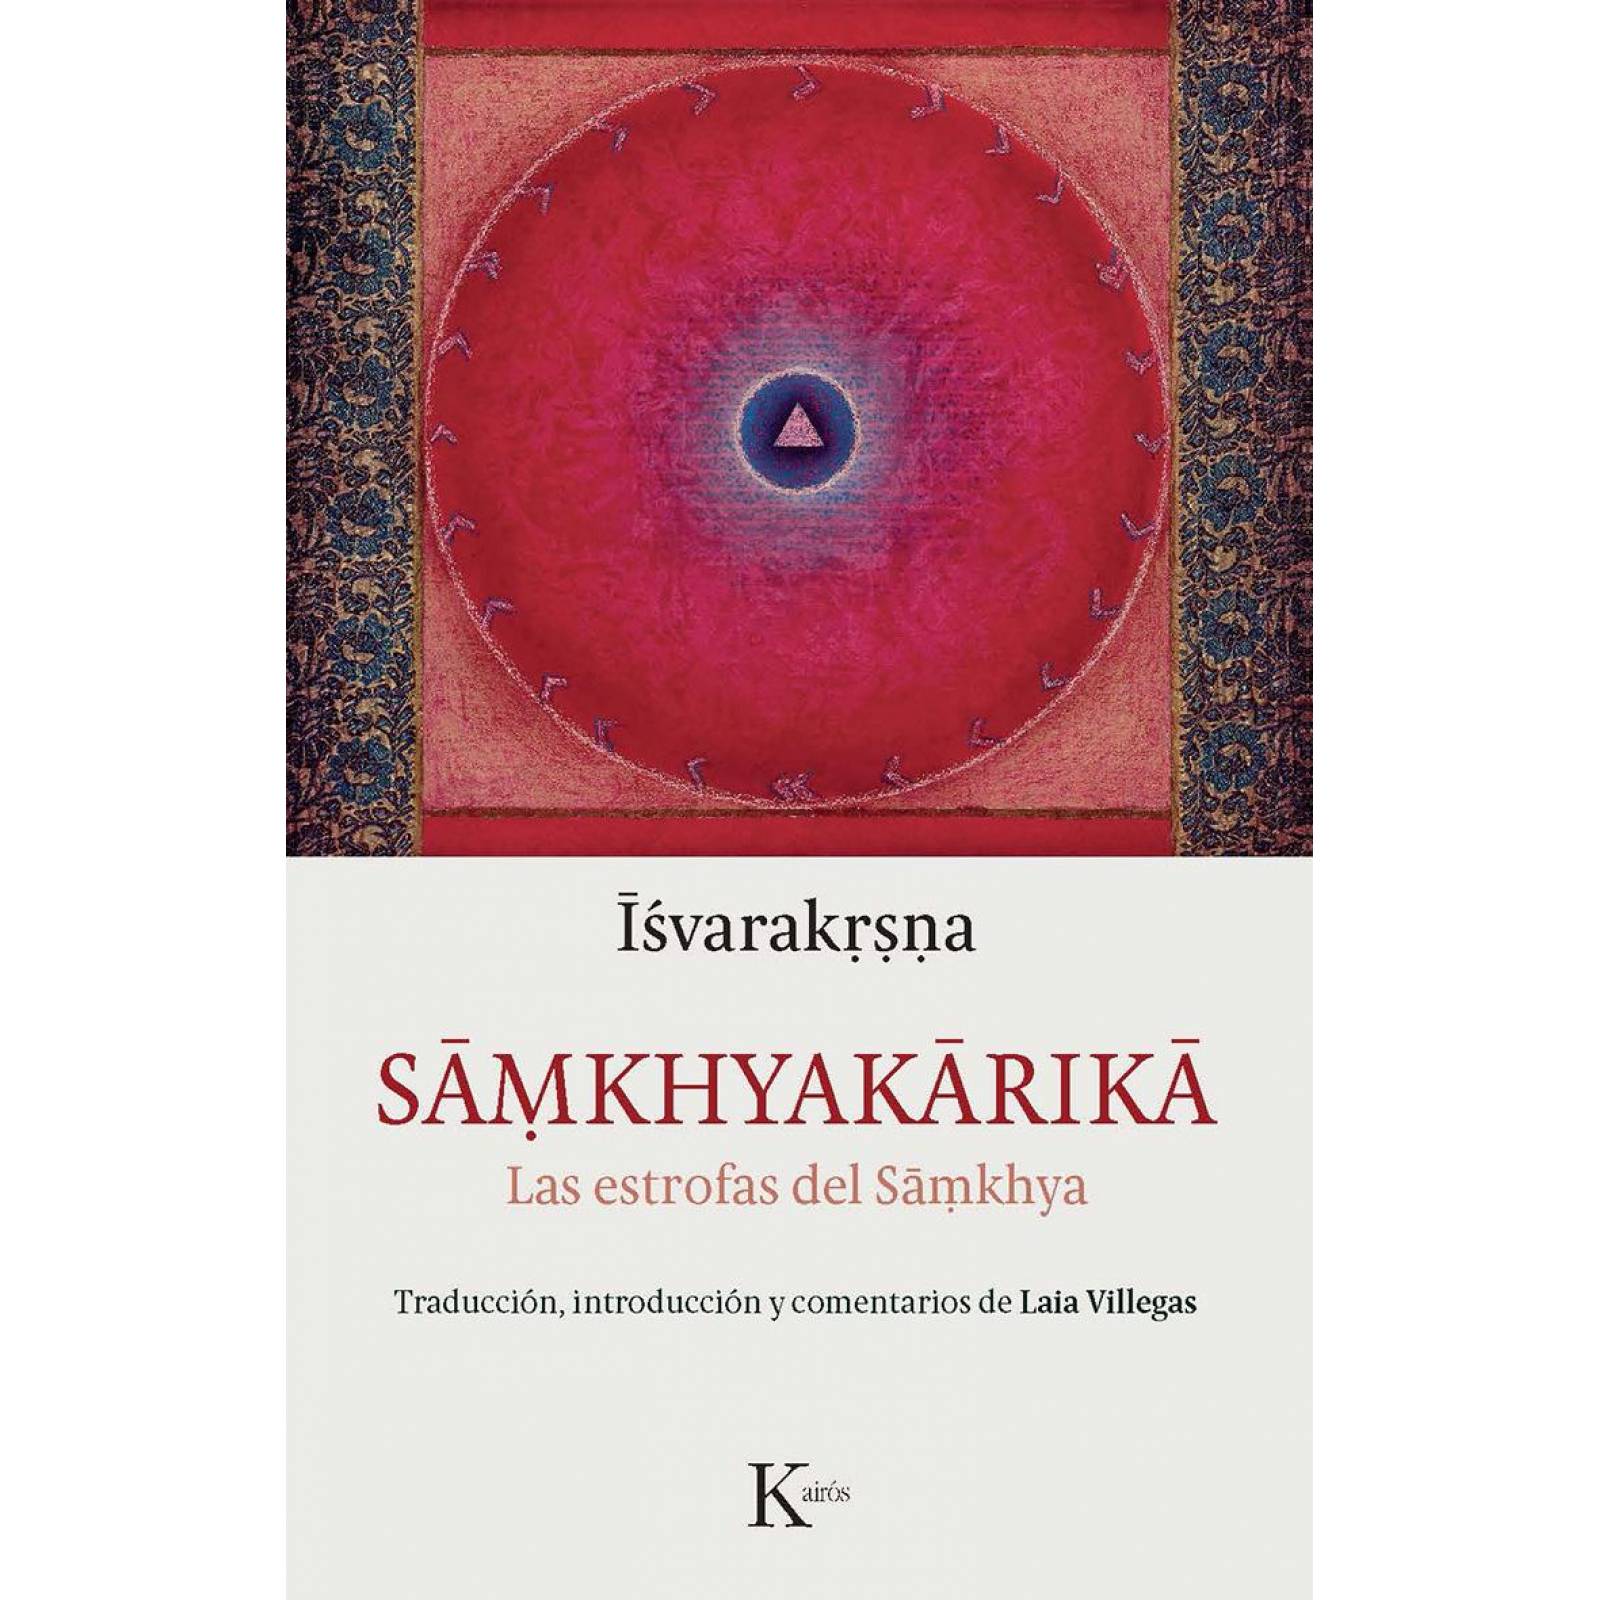 Samkhyakarika 